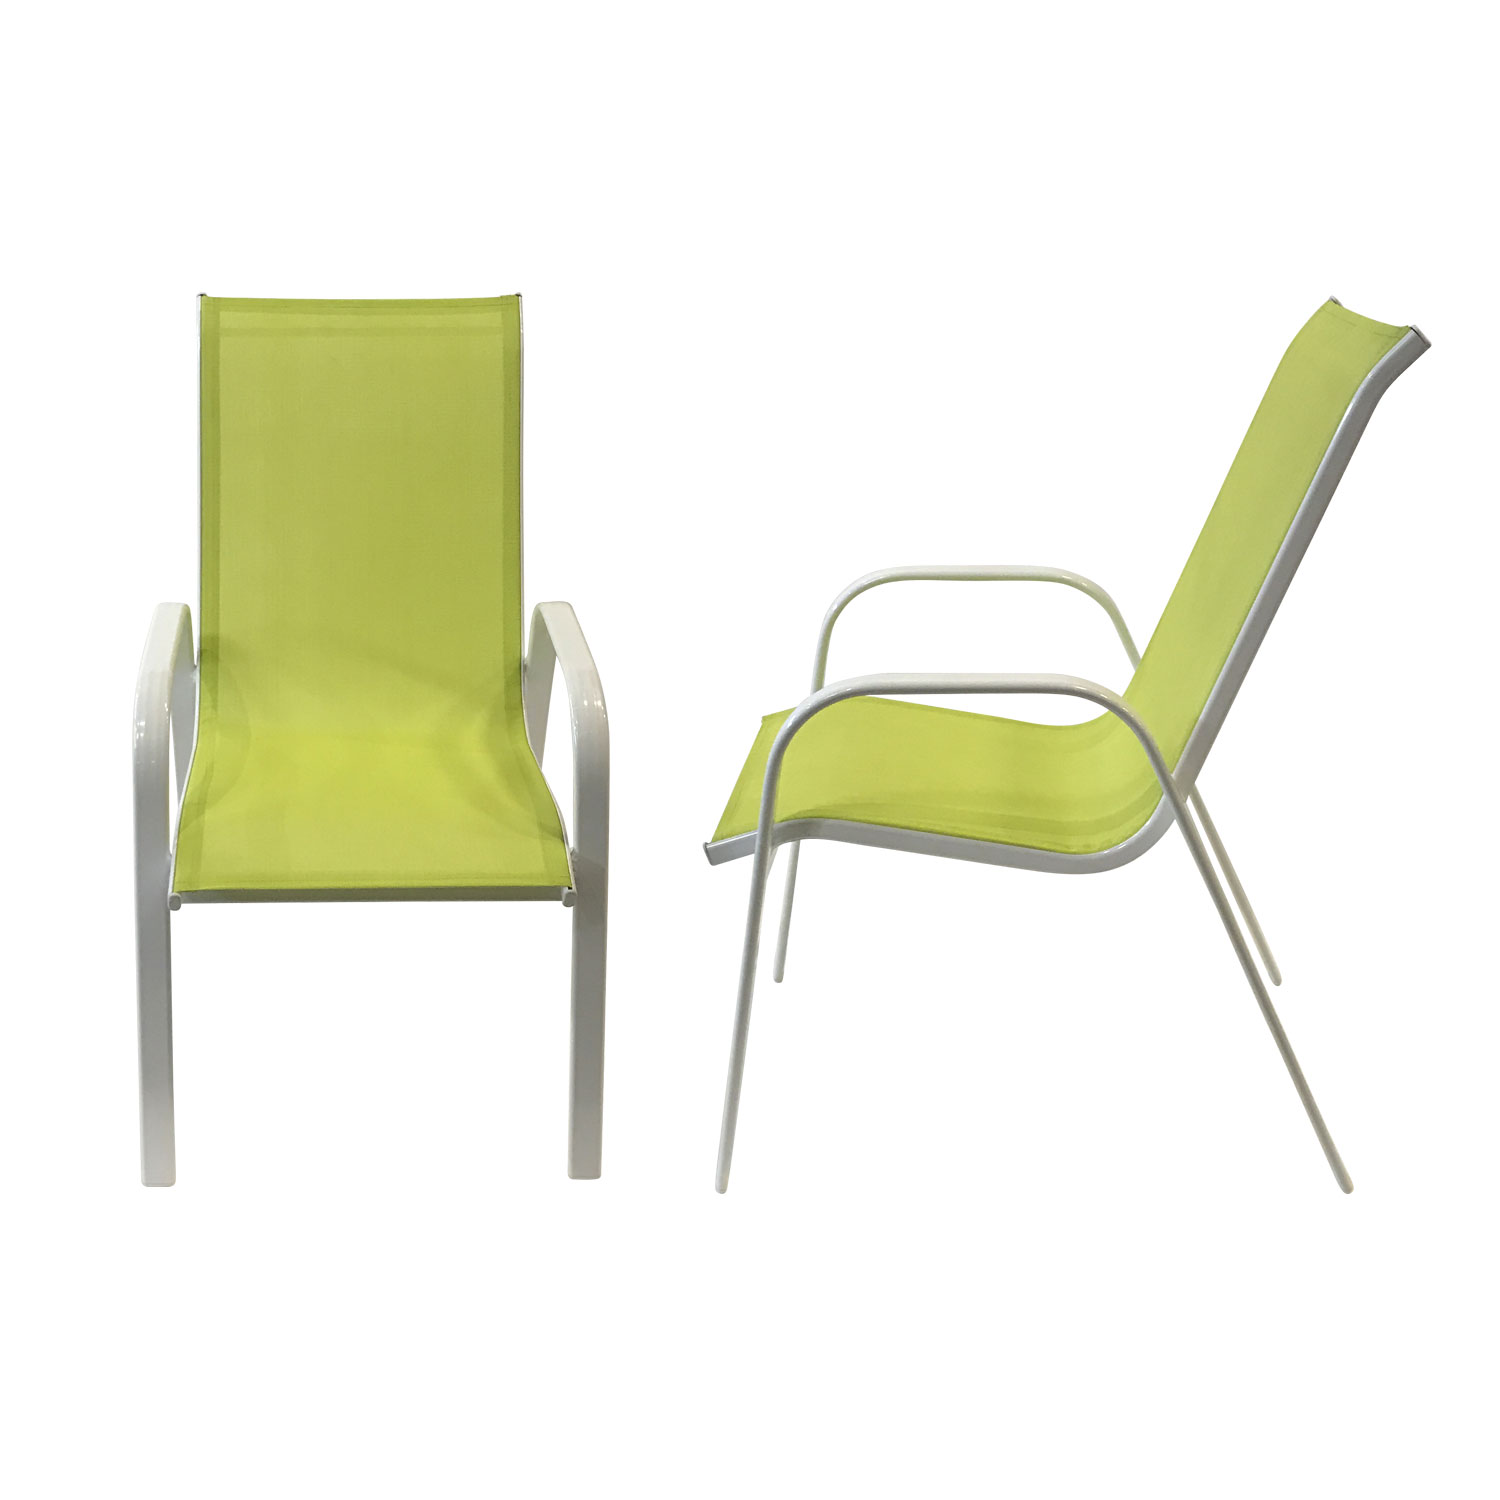 Set van 8 MARBELLA stoelen in groen textilene - wit aluminium